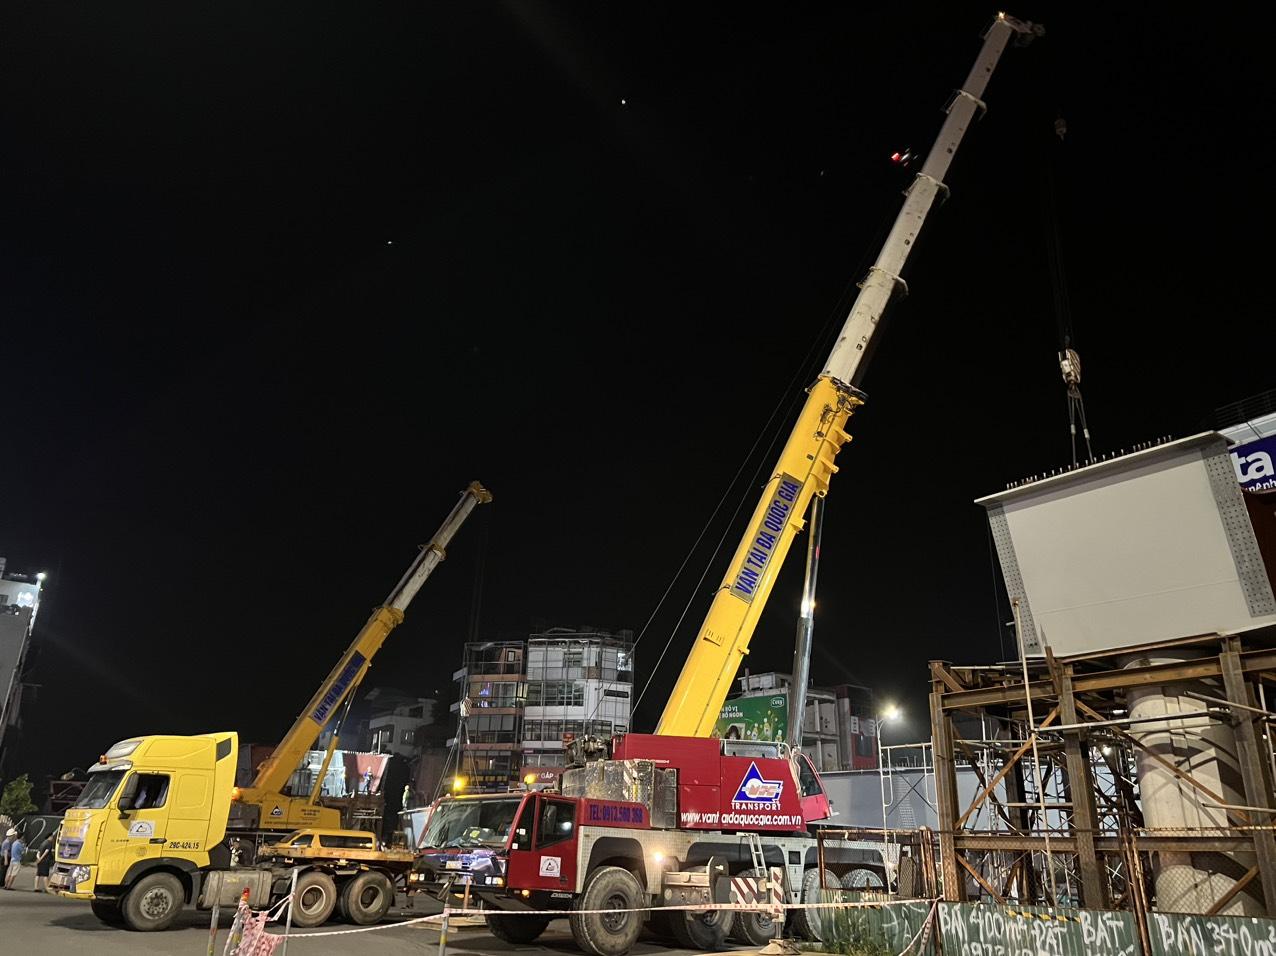 Hoàn thành việc vận chuyển và lắp đặt 2 dầm cầu thép với khẩu độ dài 60m nặng 120T tại nút giao đường Nguyễn Văn Cừ - Hồng Tiến, Gia Lâm - Hà Nội